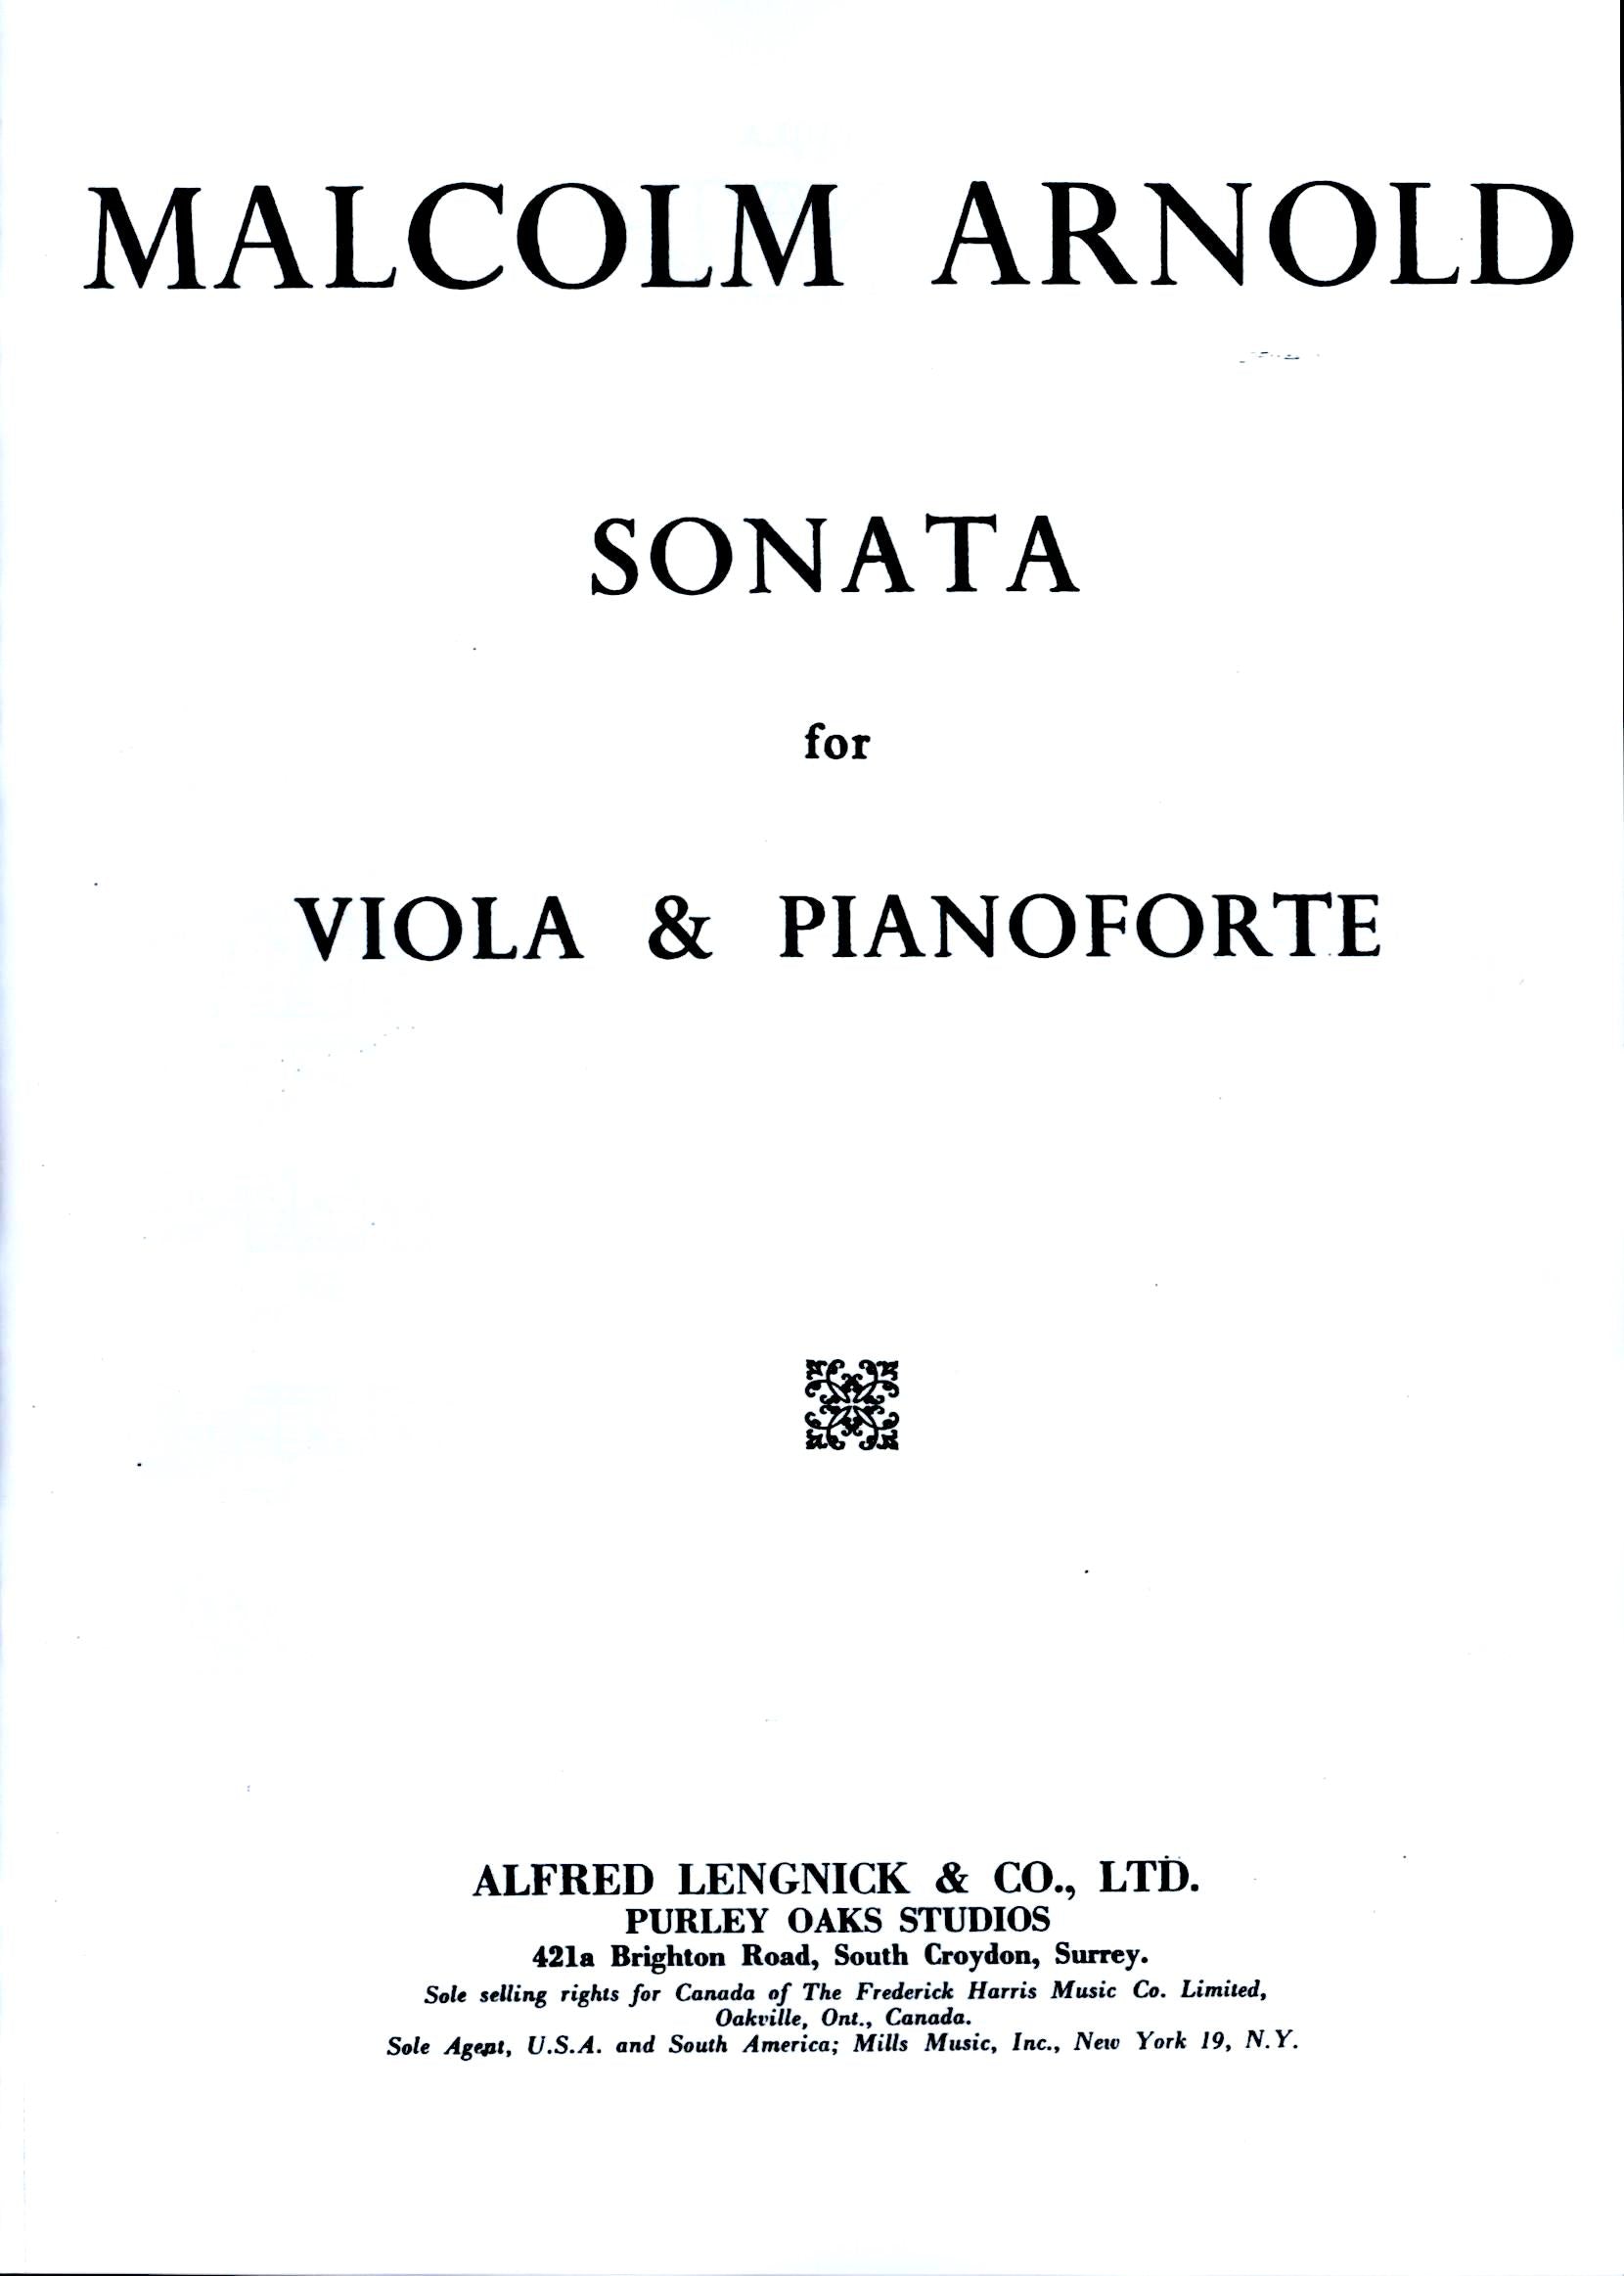 Arnold: Viola Sonata, Op. 17